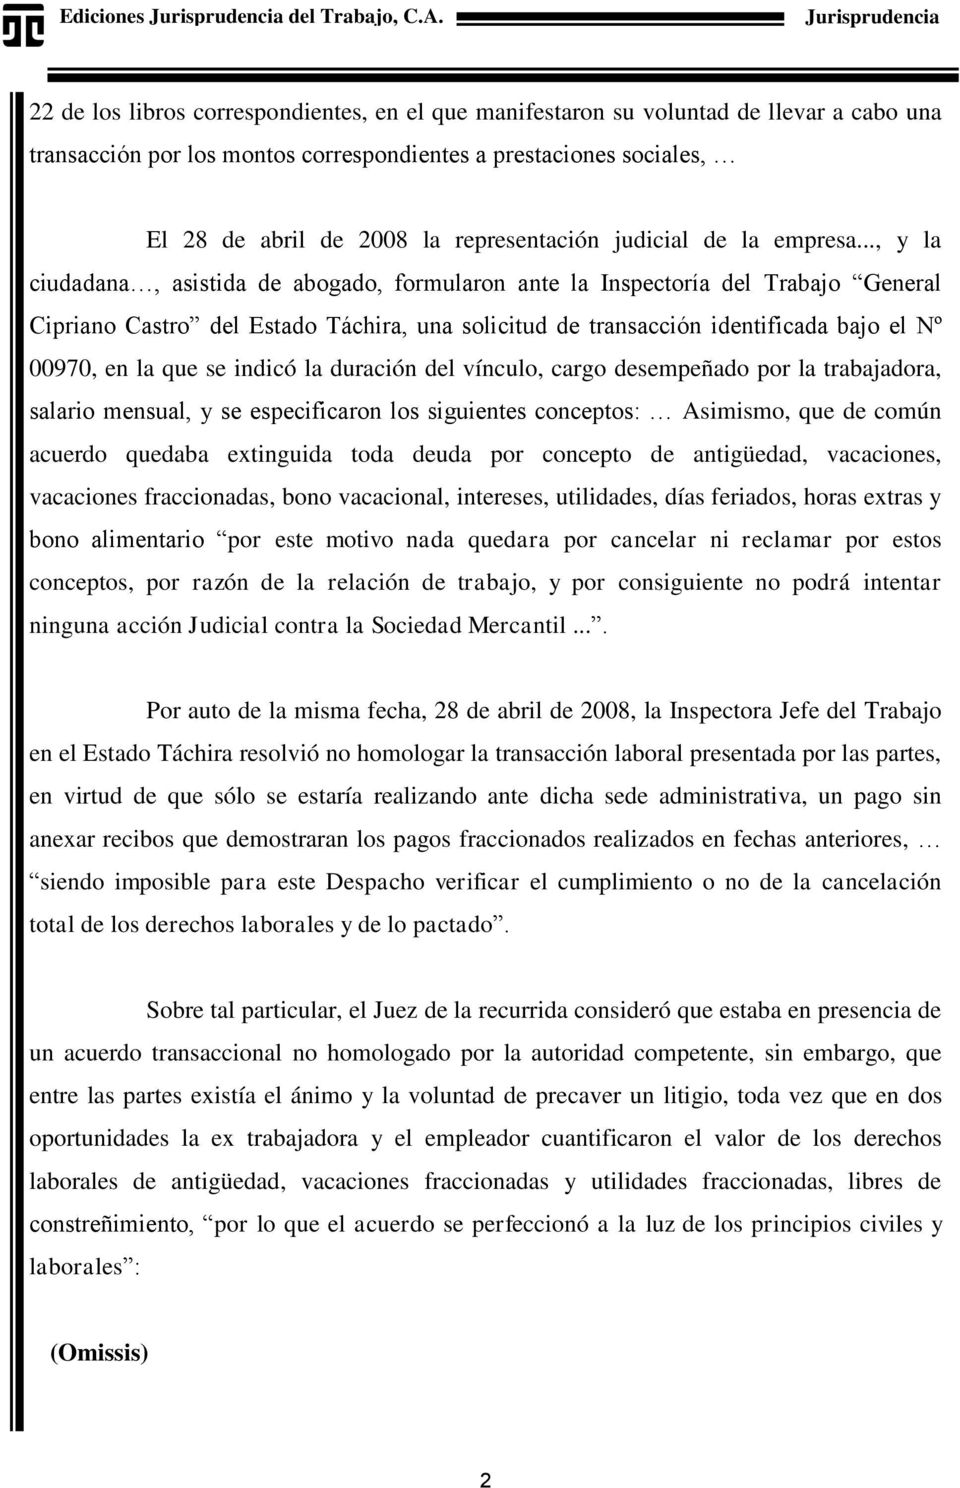 .., y la ciudadana, asistida de abogado, formularon ante la Inspectoría del Trabajo General Cipriano Castro del Estado Táchira, una solicitud de transacción identificada bajo el Nº 00970, en la que